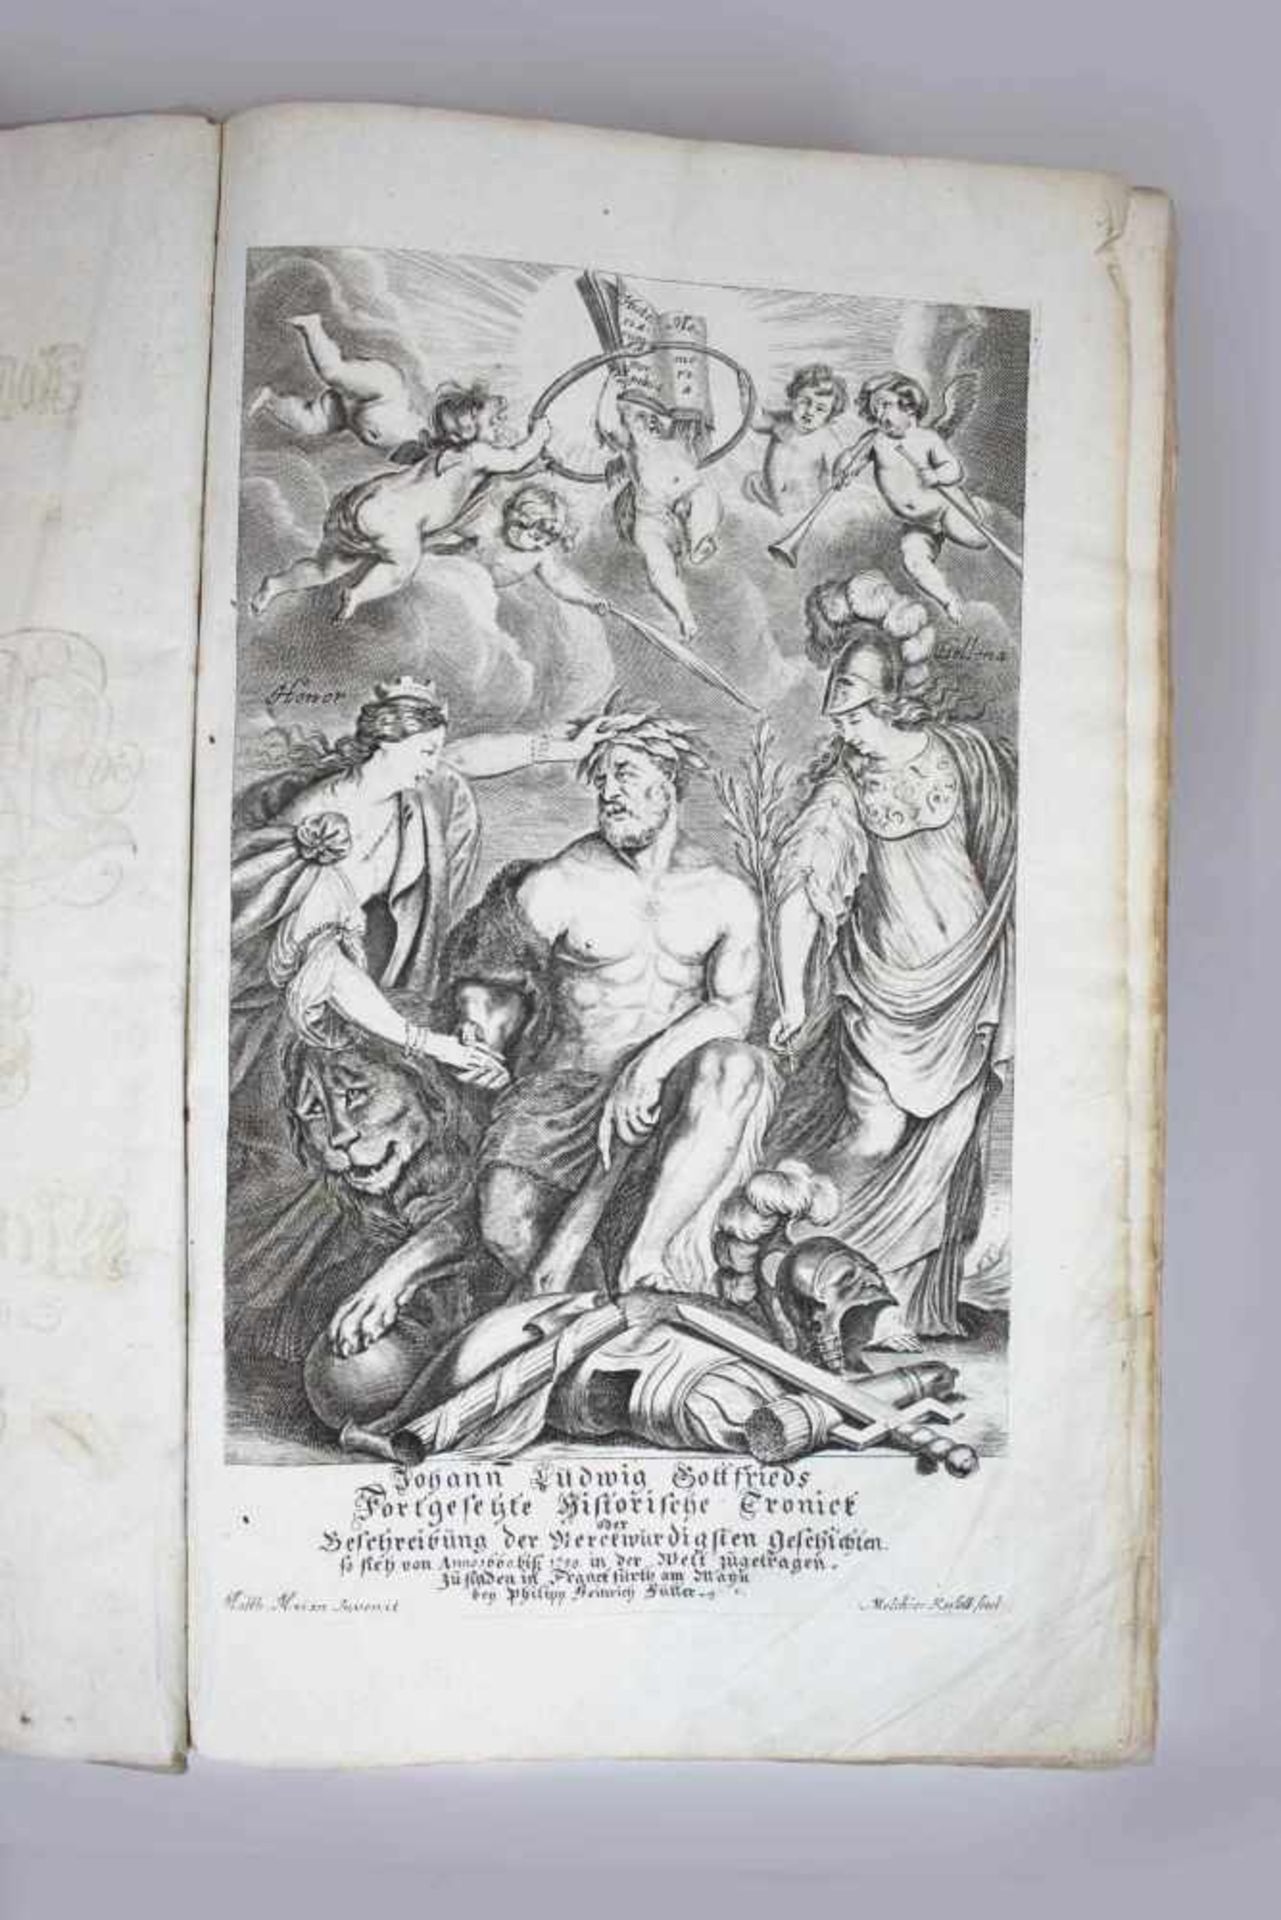 Johann Ludwig Gottfrieds fortgesetzte historische Chronik oder Beschreibung der merkwürdigsten - Image 3 of 3